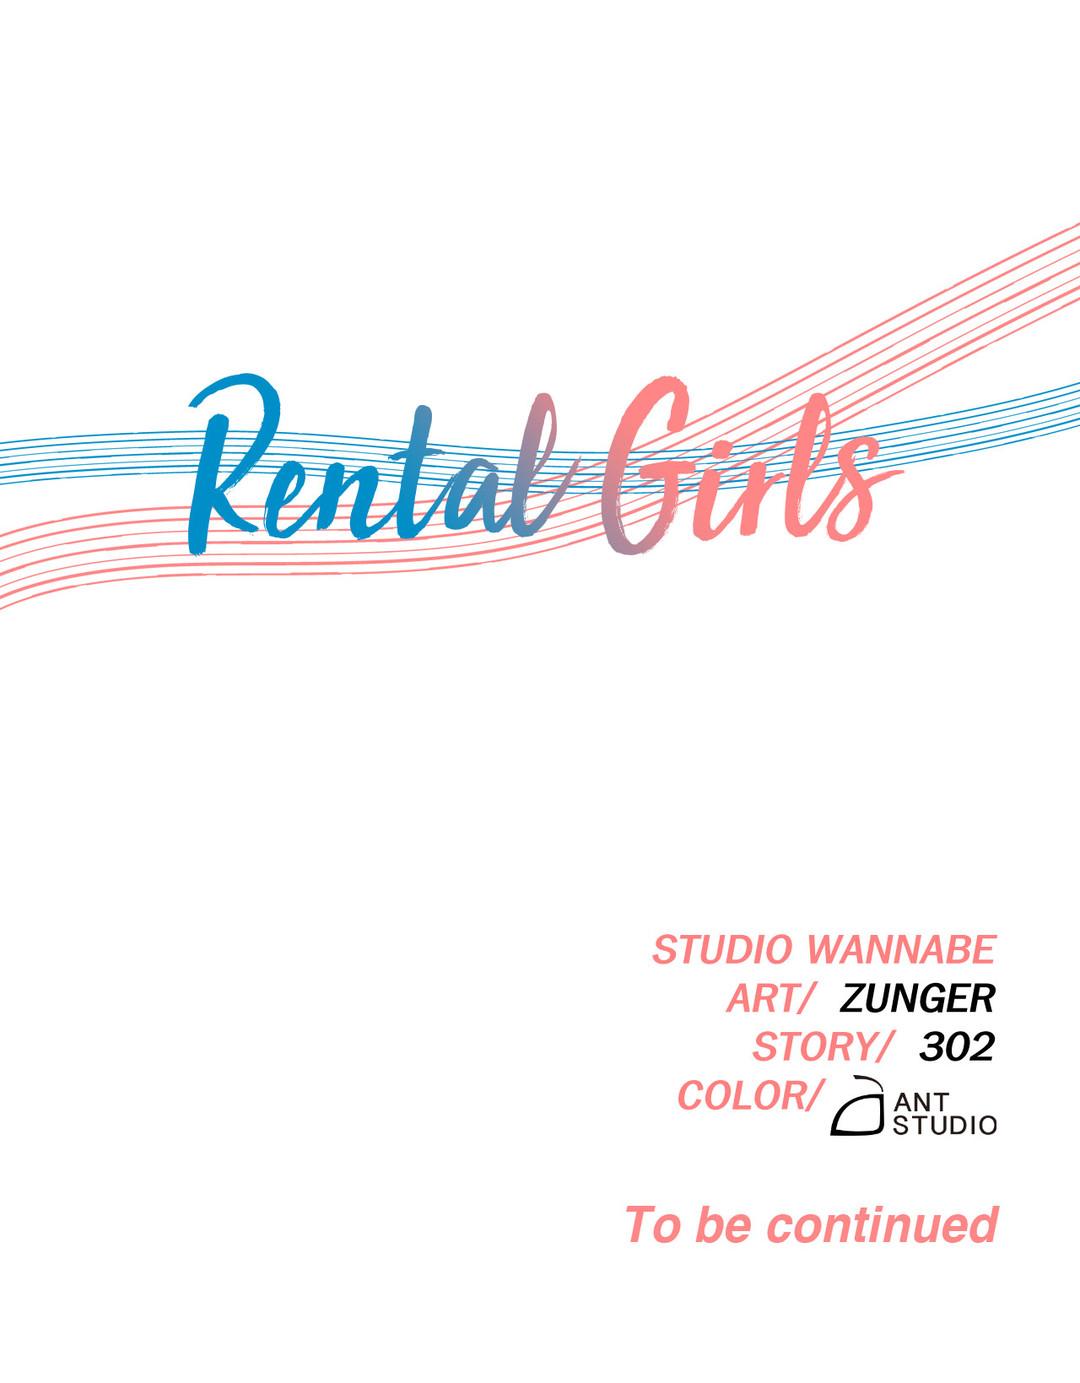 Rental Girls 3 26